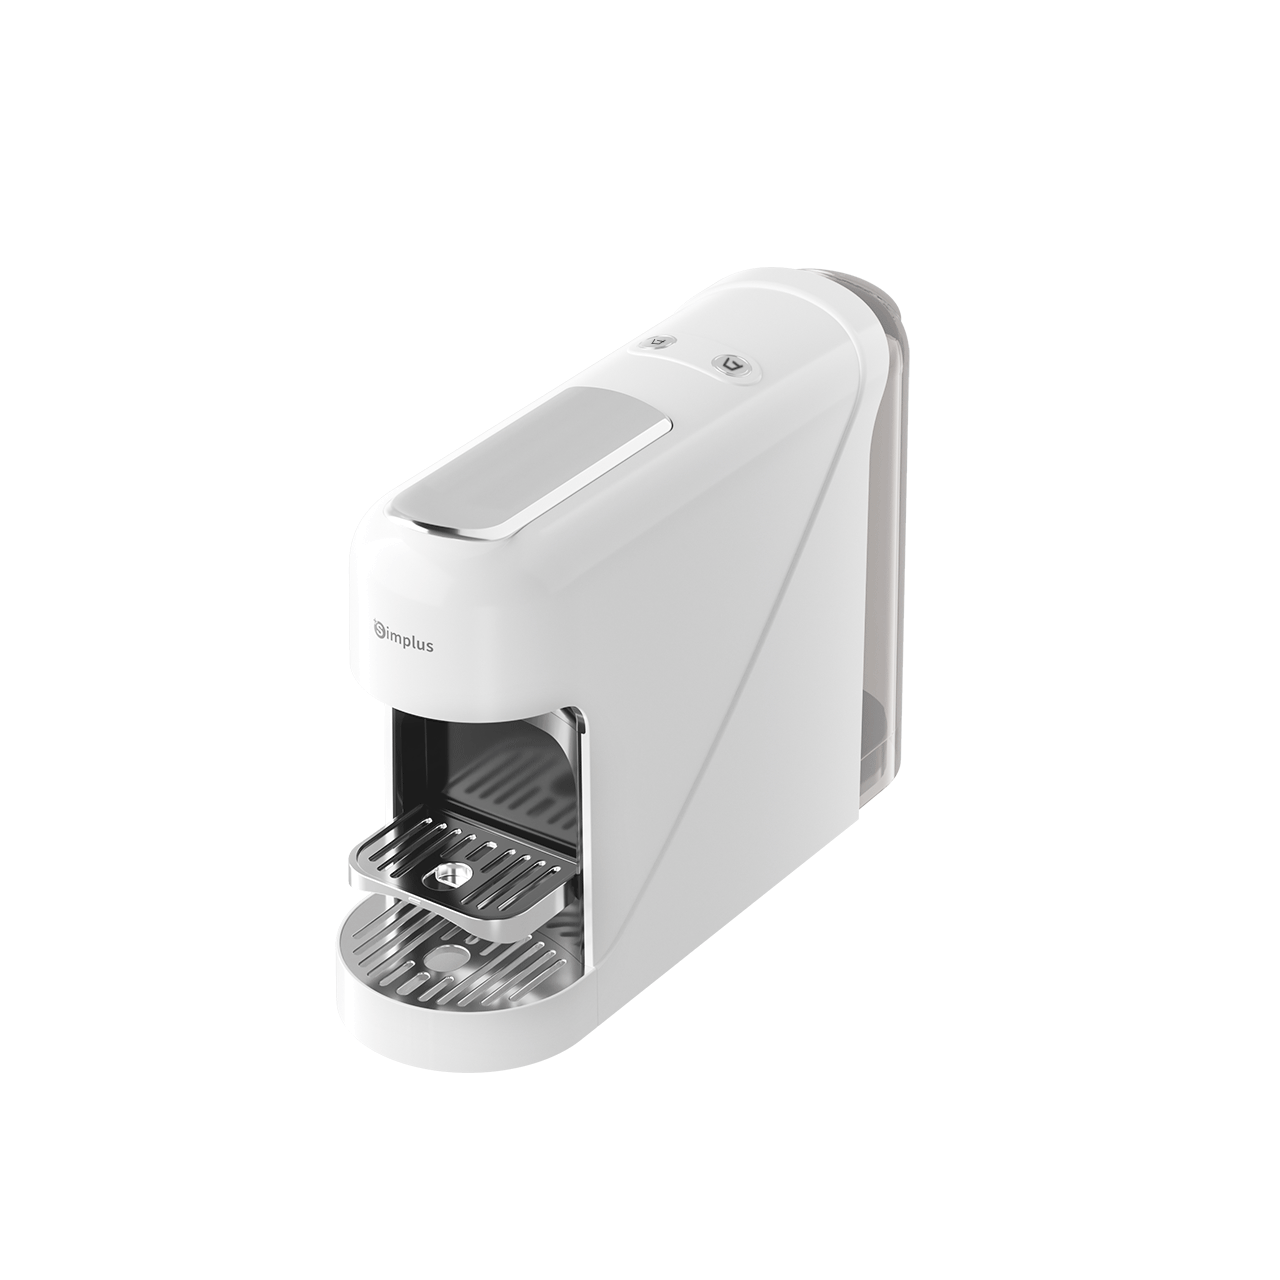 User Manual - ELECTRIC COFFEE MACHINE KFJH008